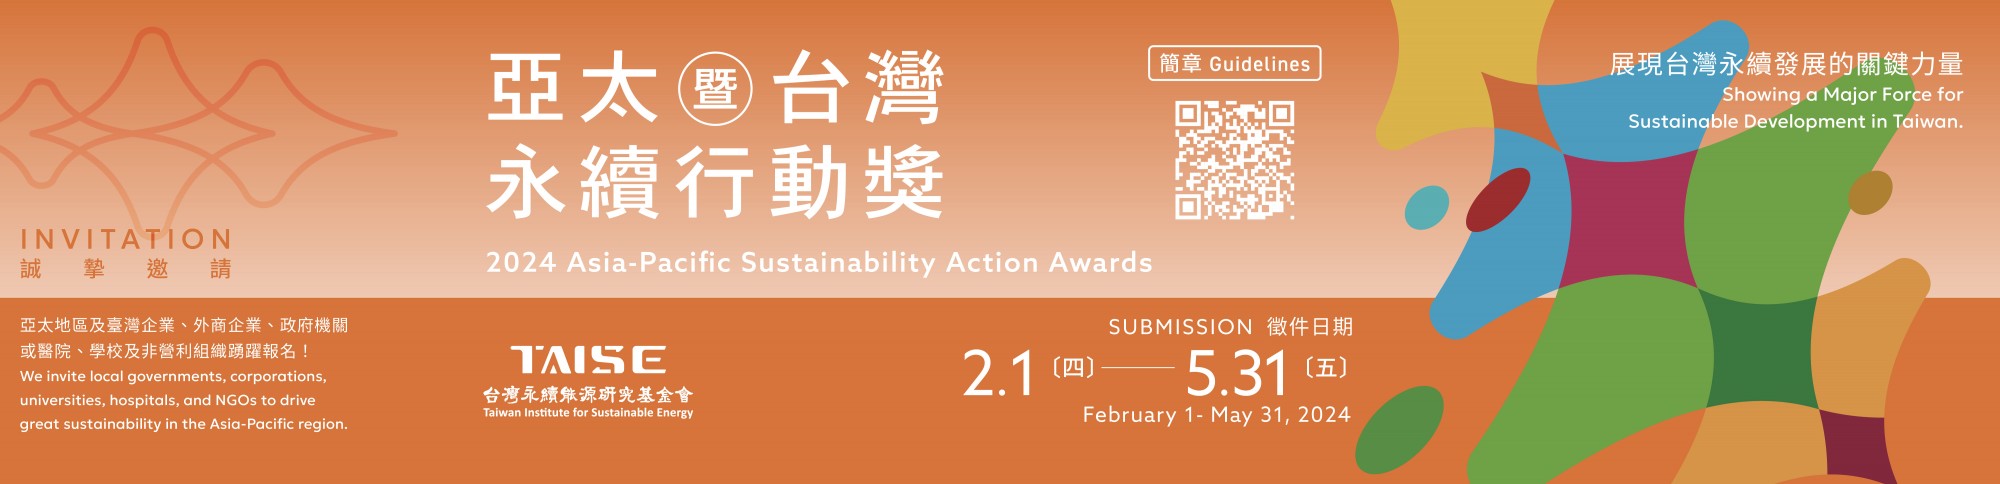 2024年 APSAA亞太暨台灣永續行動獎 開放報名  